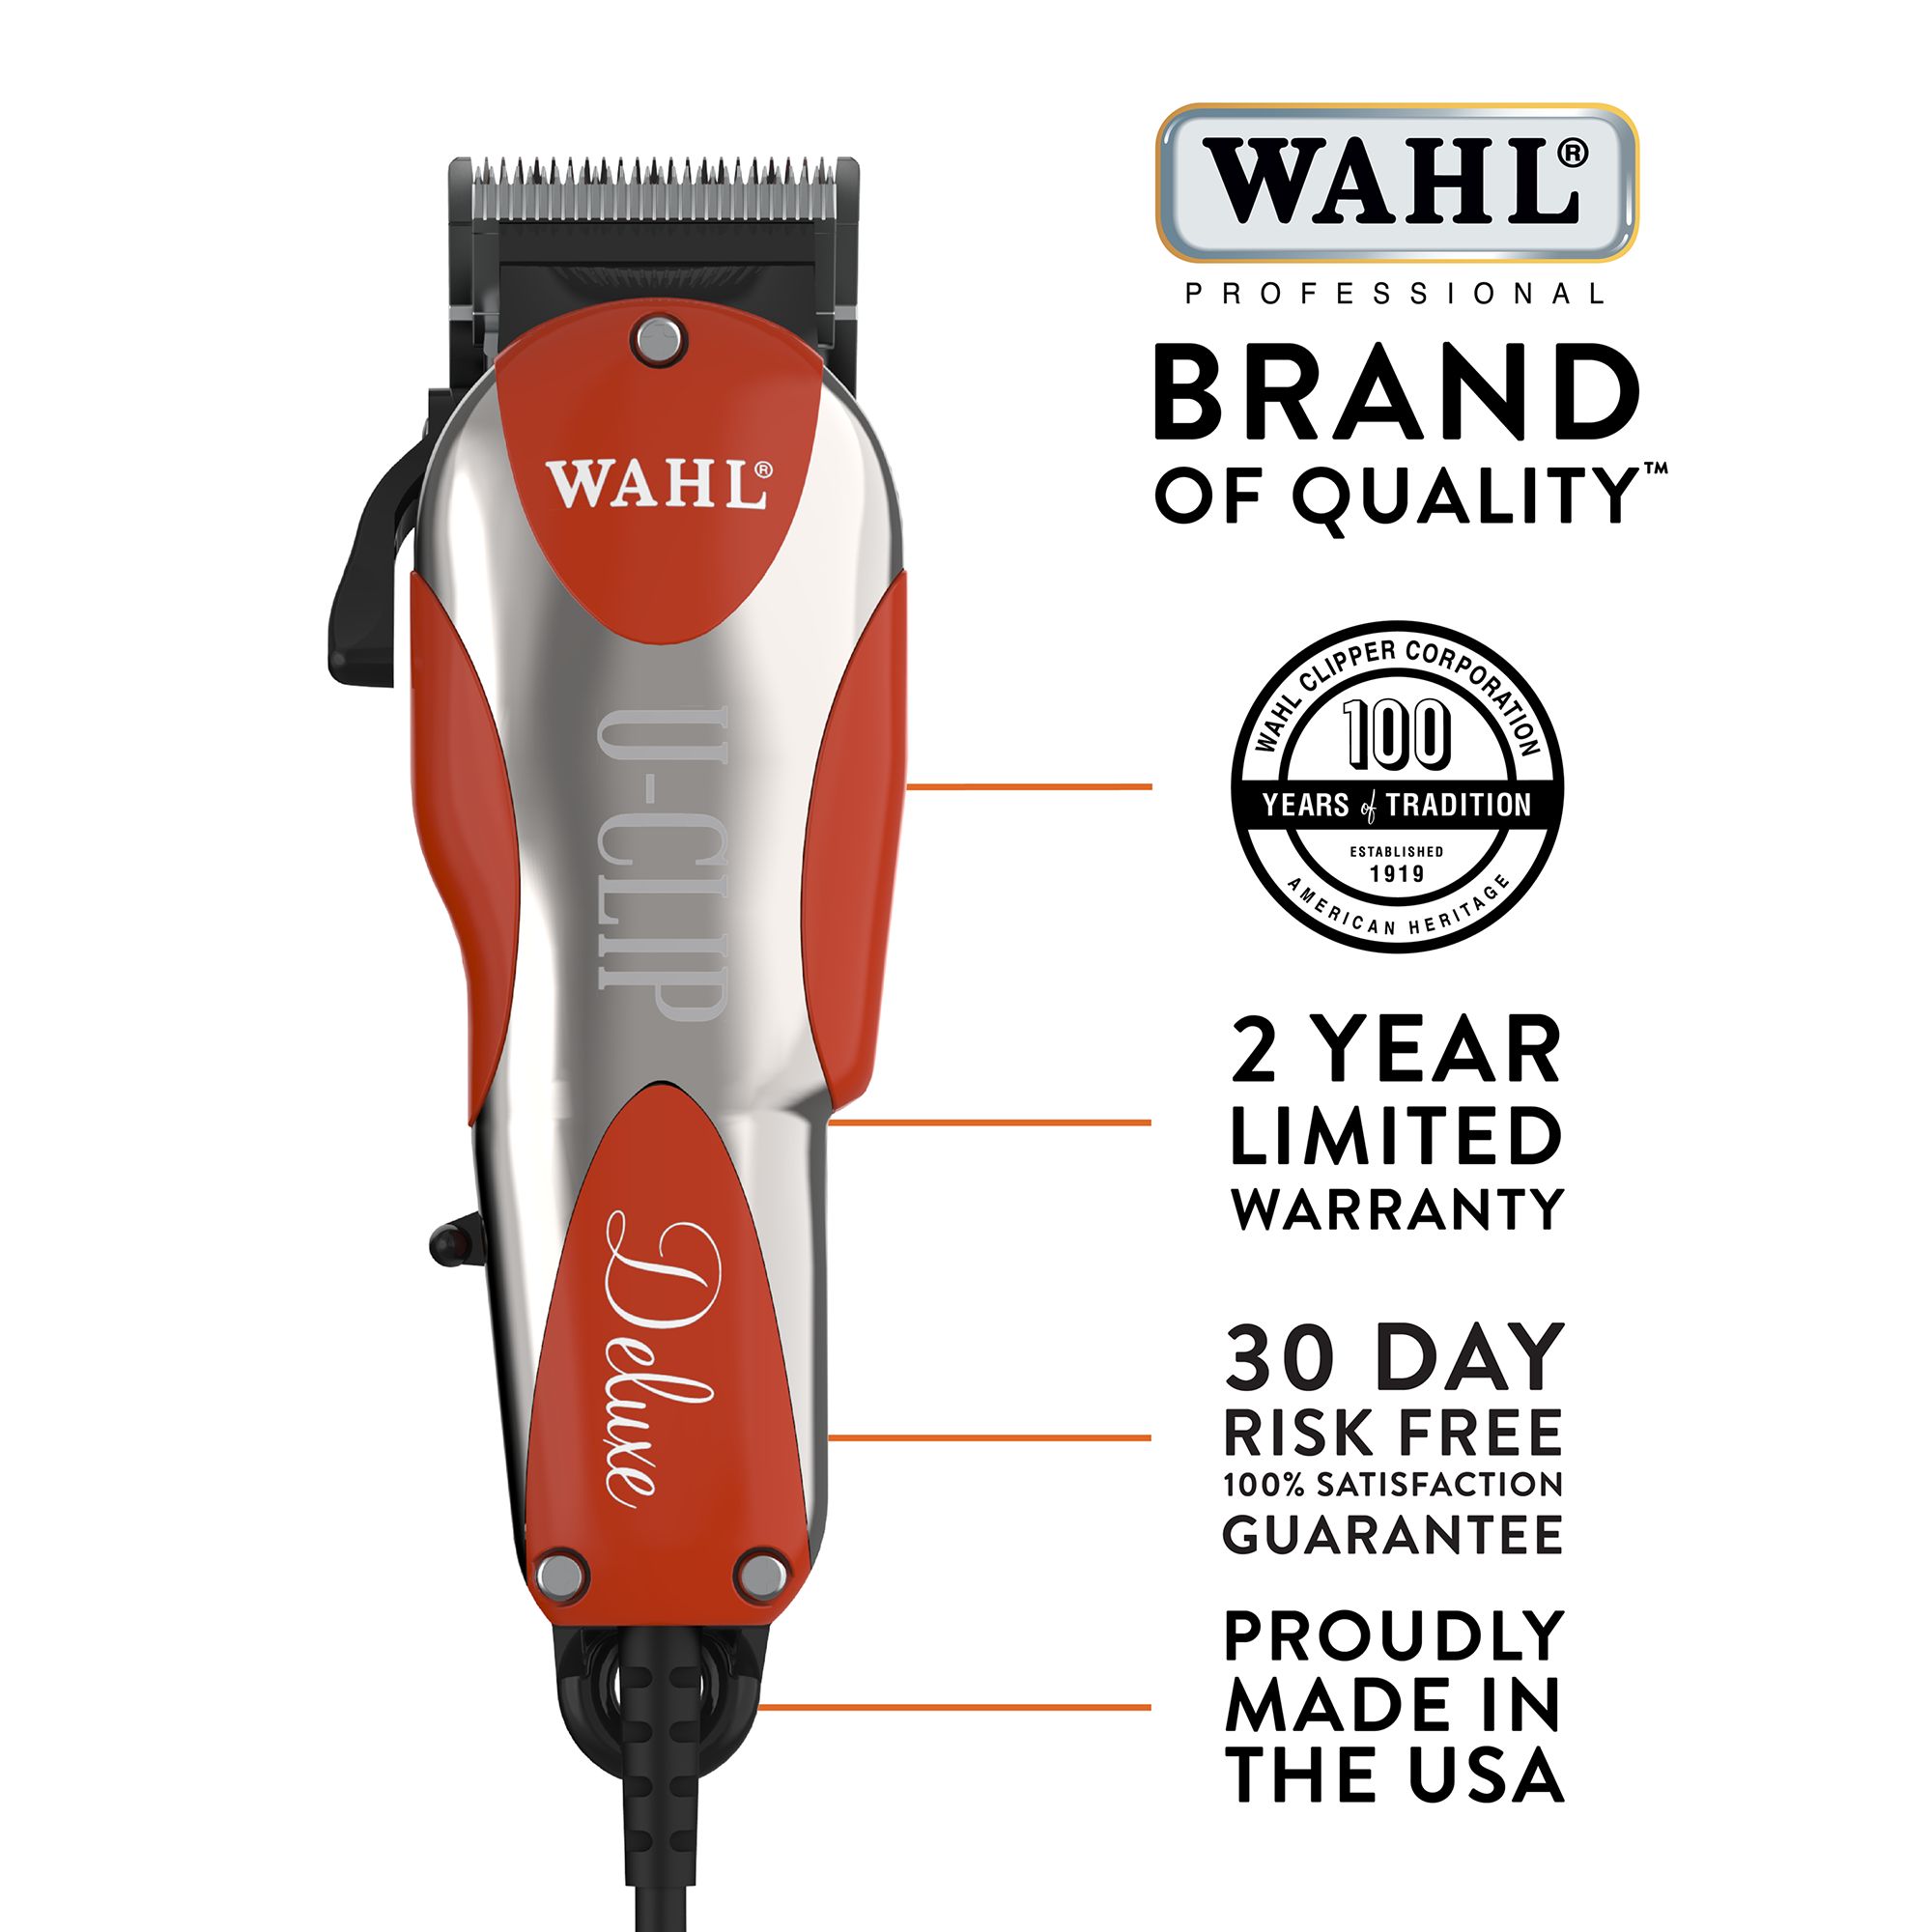 wahl starter kit hair clipper